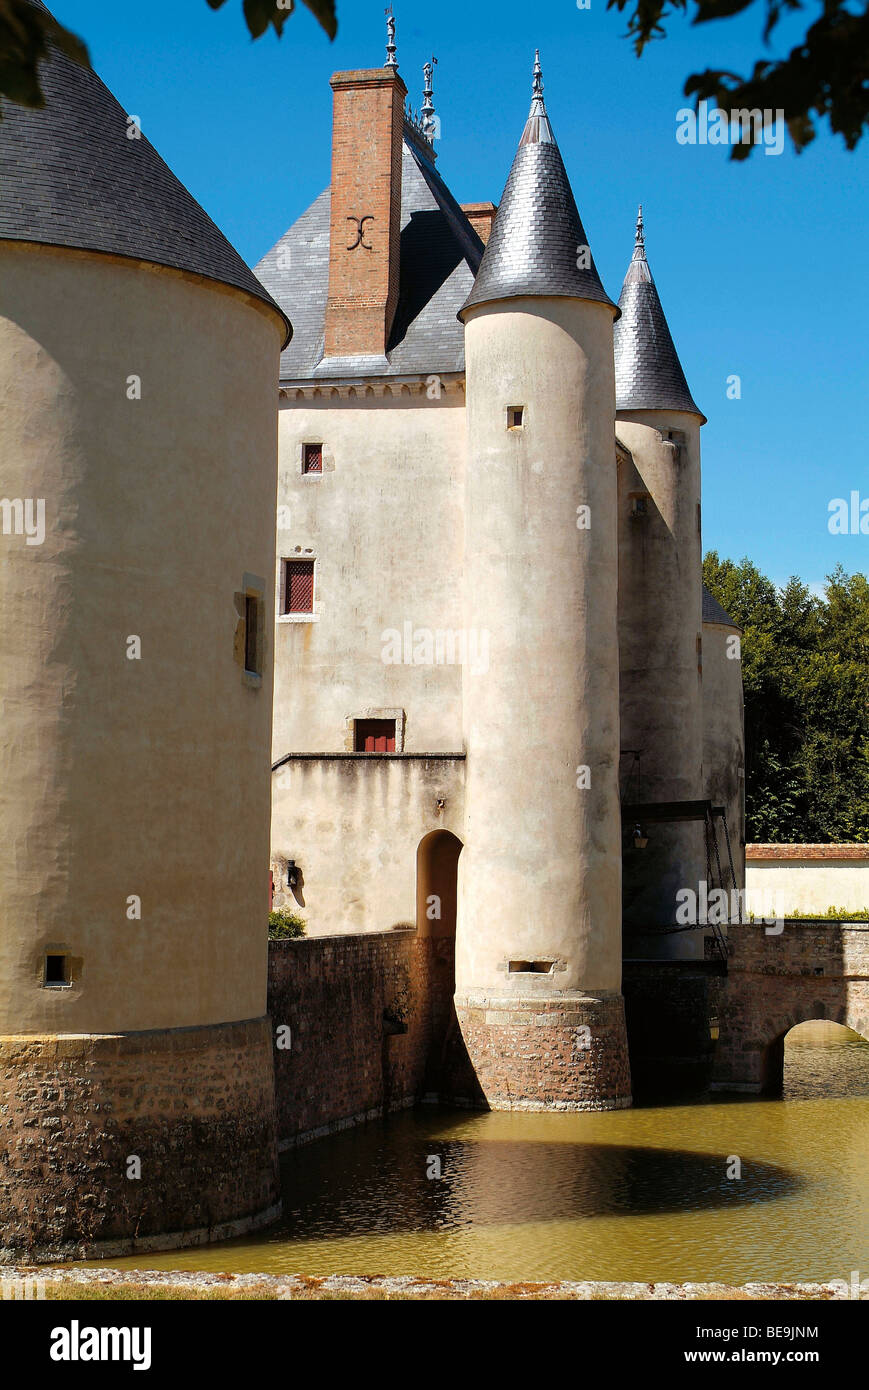 Chilleurs aux Bois (45) : the 'Château de Chamerolles' castle Stock Photo